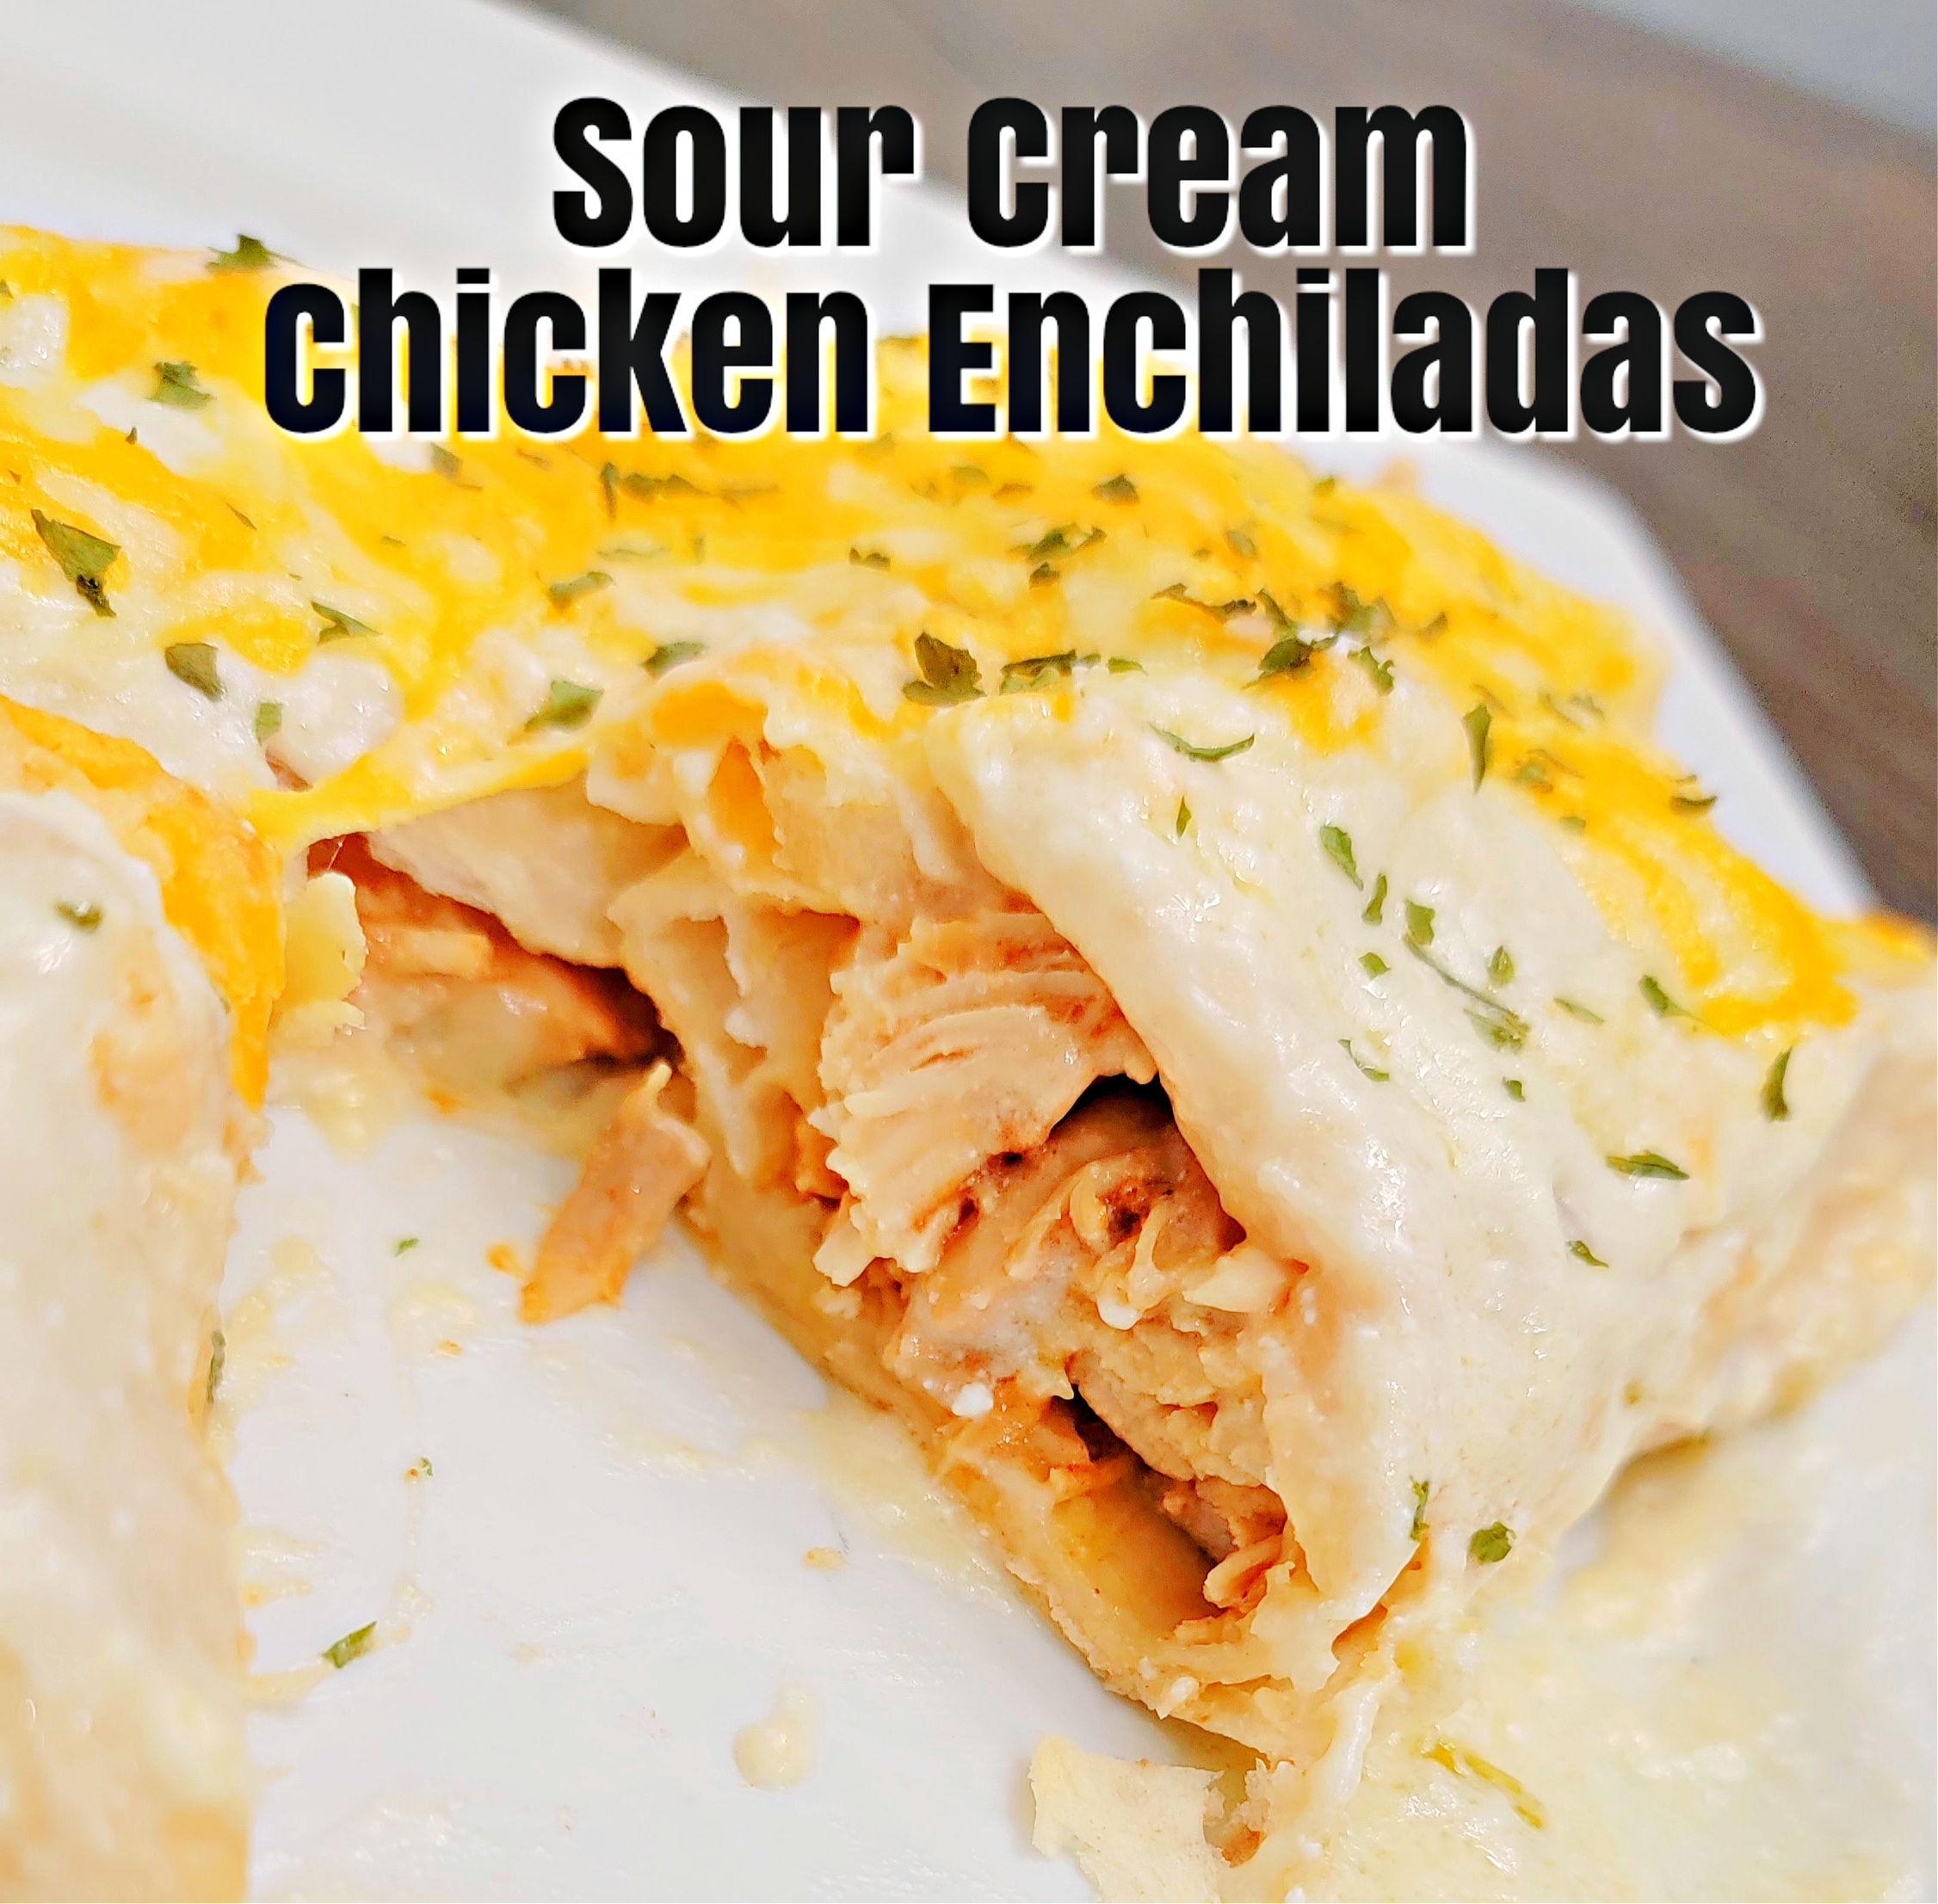 Sour Cream Chicken Enchiladas #enchiladas #chickenrecipe #easyrecipe #dinner